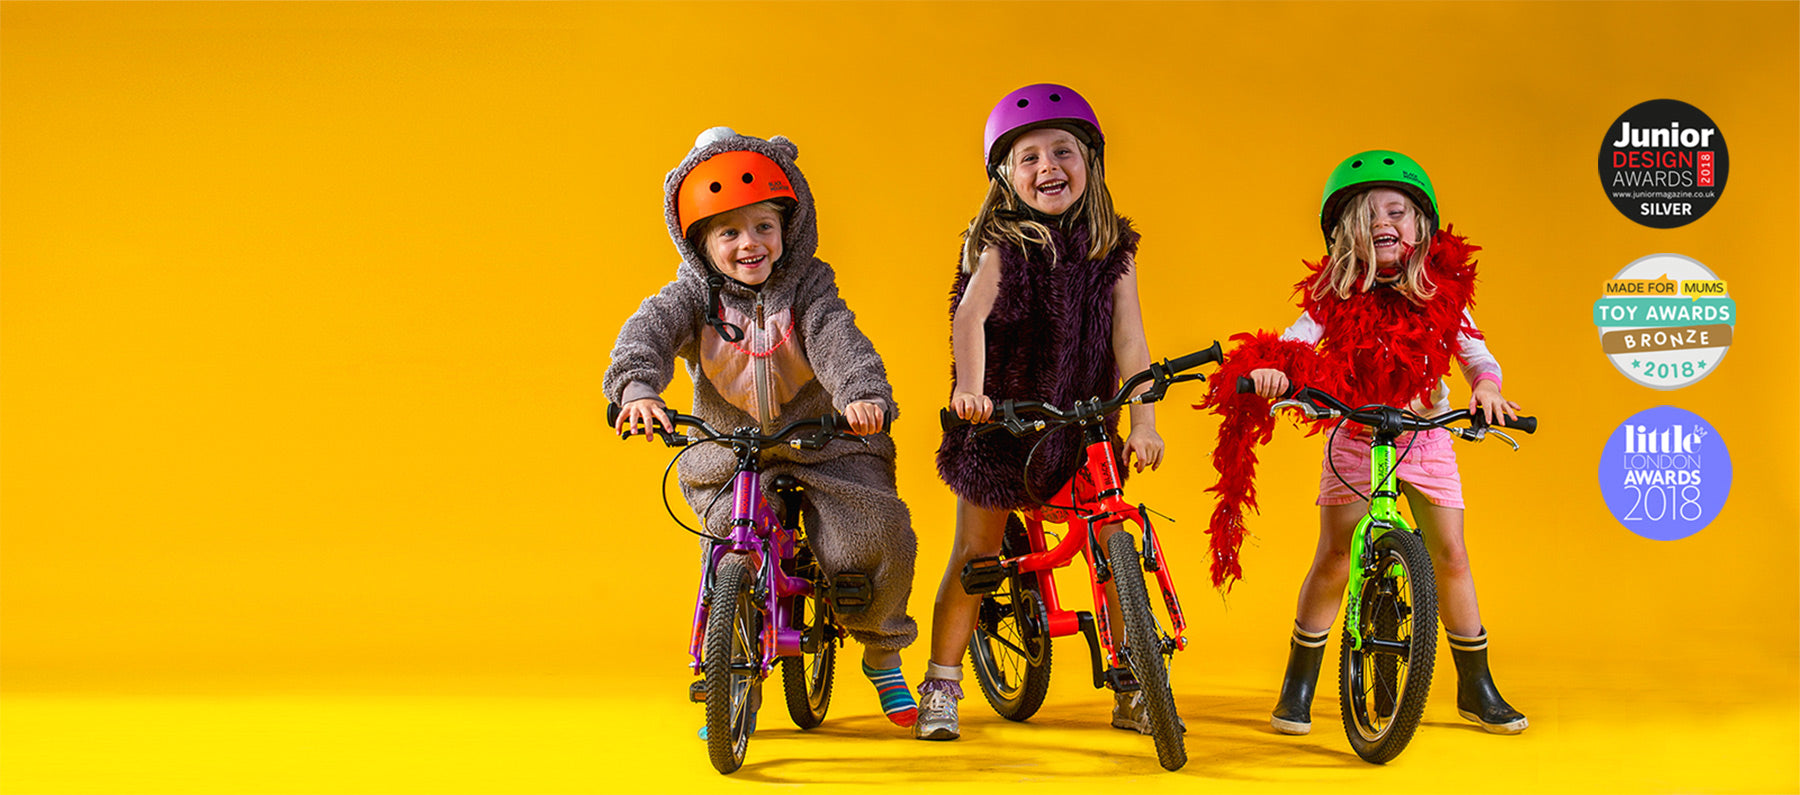 Lightweight aluminium children's bicycles and balance bikes